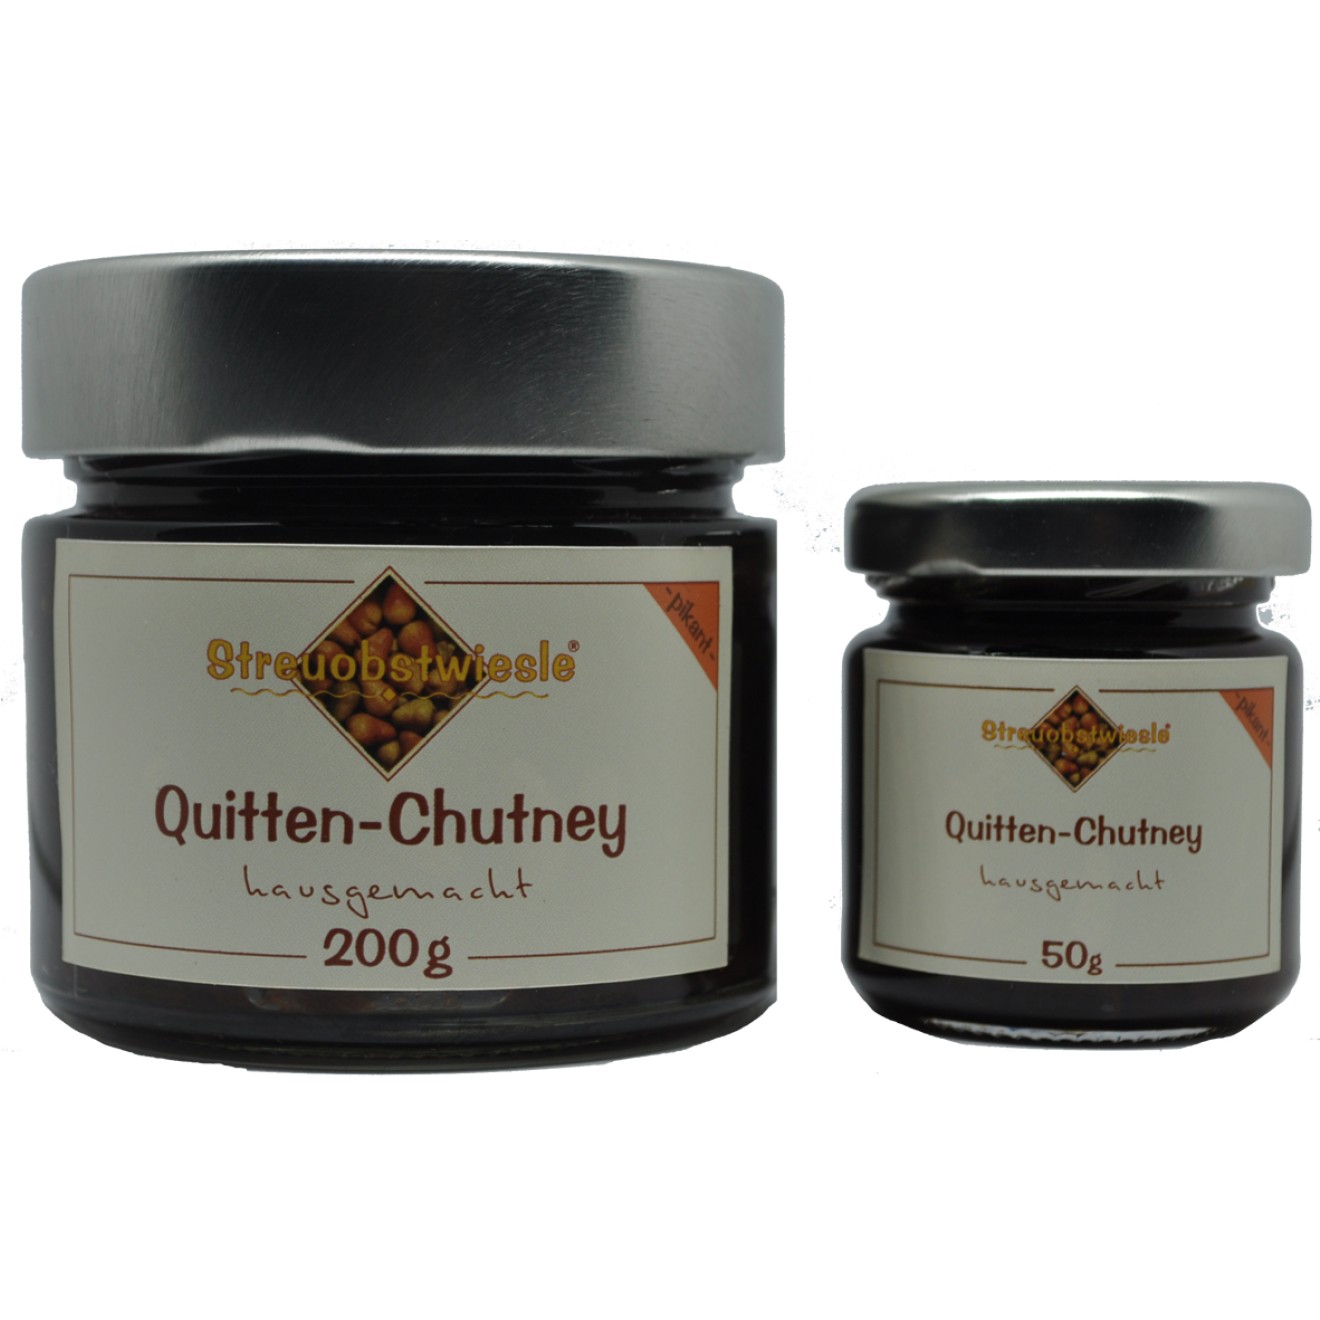 Quitten-Chutney